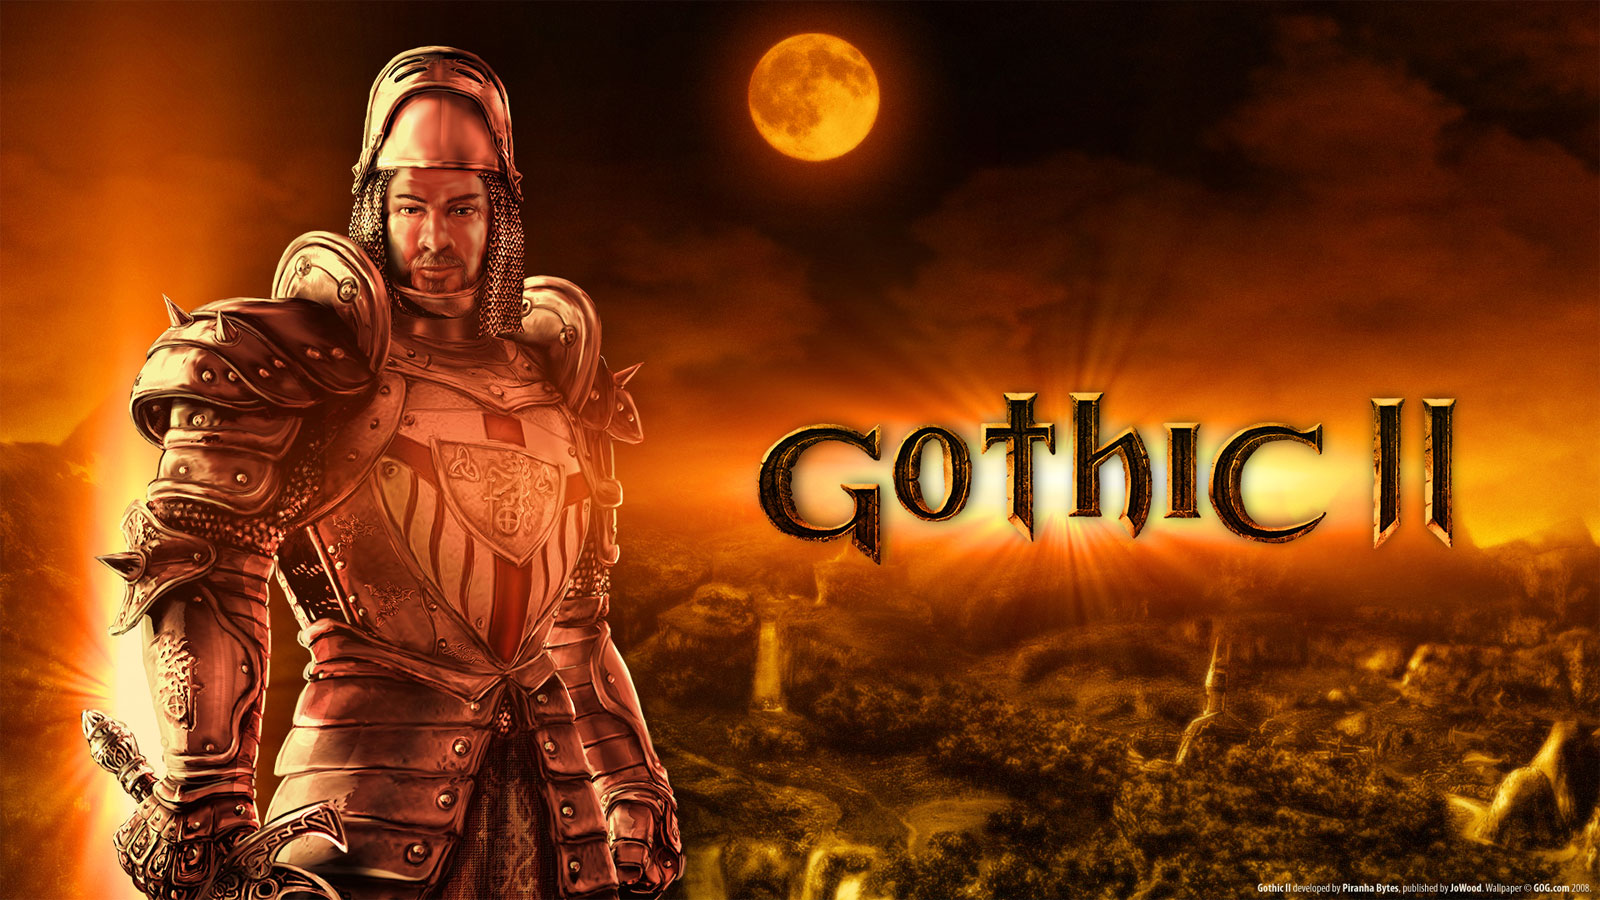 Gothic 2: Dzieje Khorinis – dwa dodatki zamiast jednego? Komplikacji ciąg dalszy…